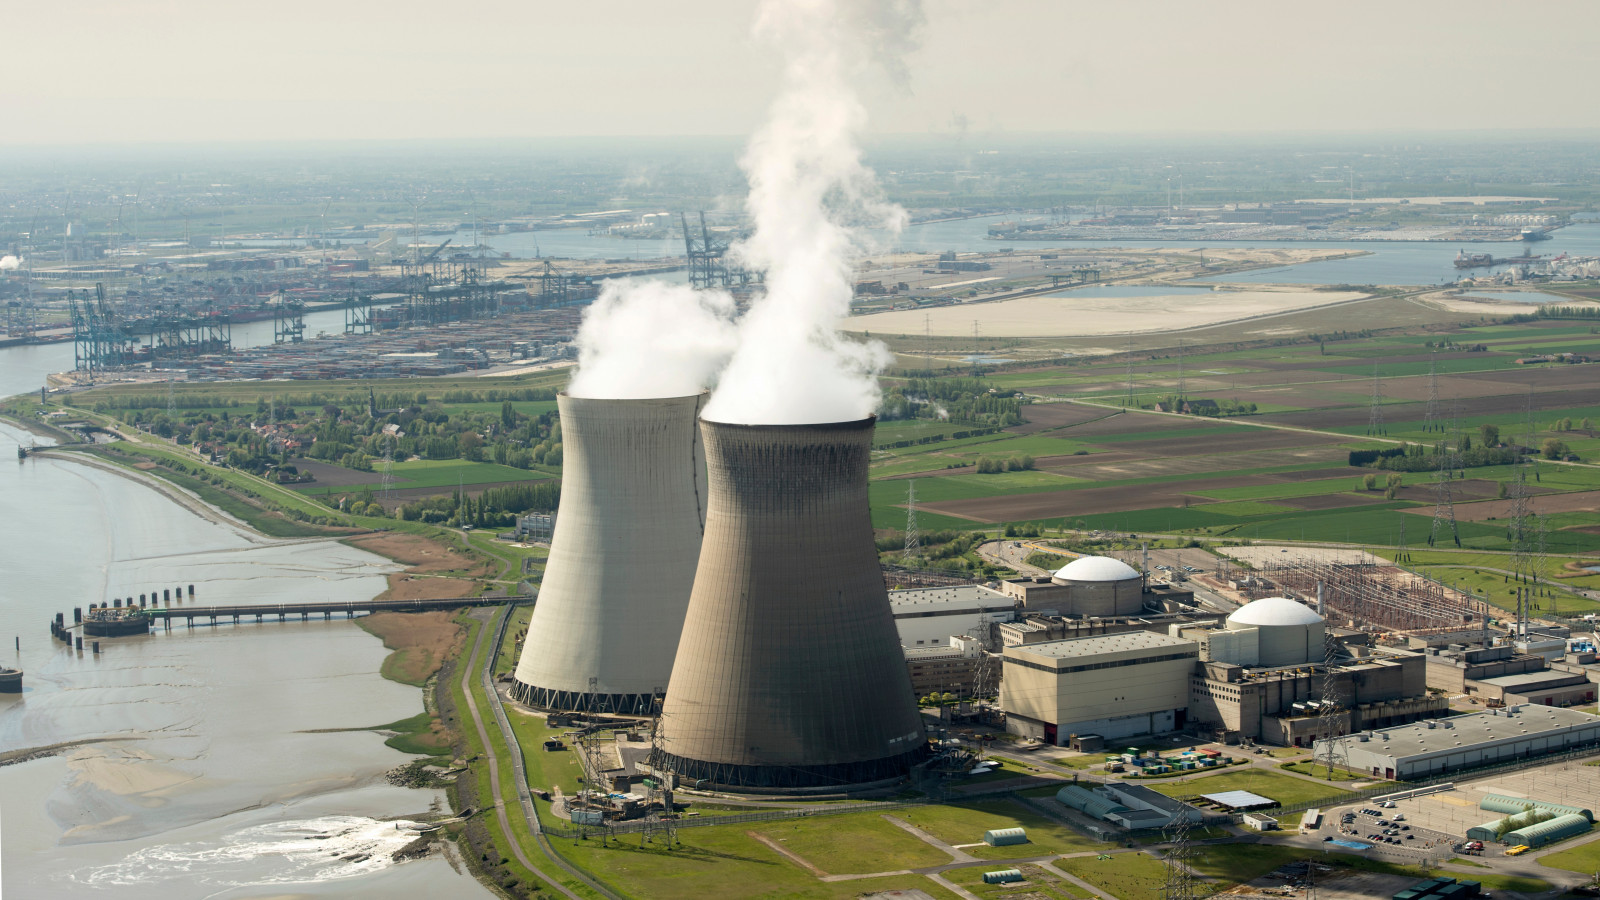 Atomstrom: Strom aus Kernenergie